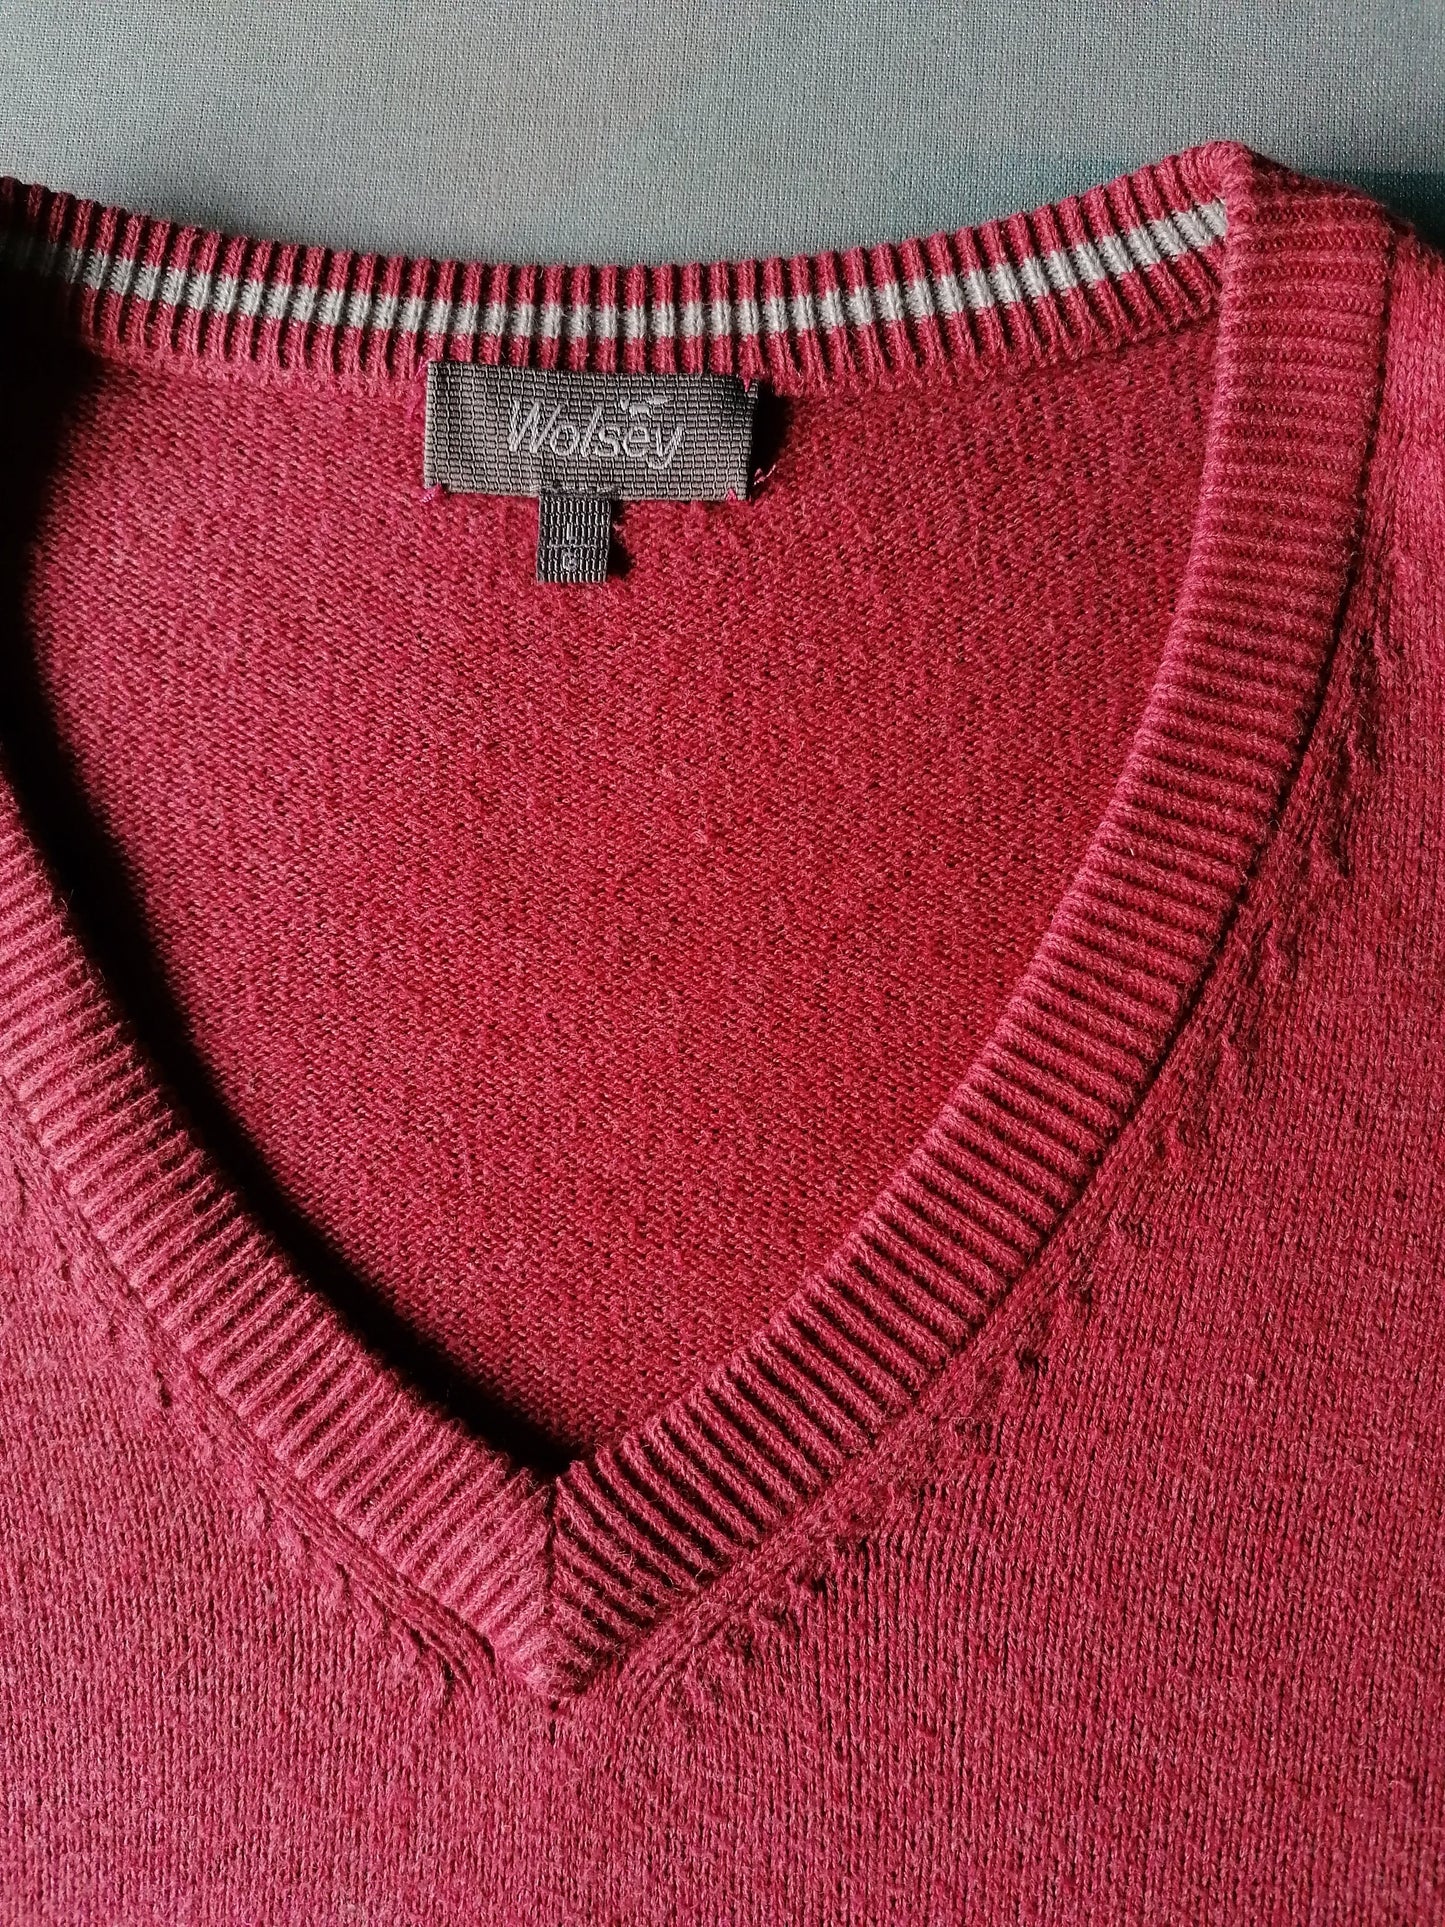 Suéter de Wolsey con cuello en v. Color rosa oscuro de color. Talla L.